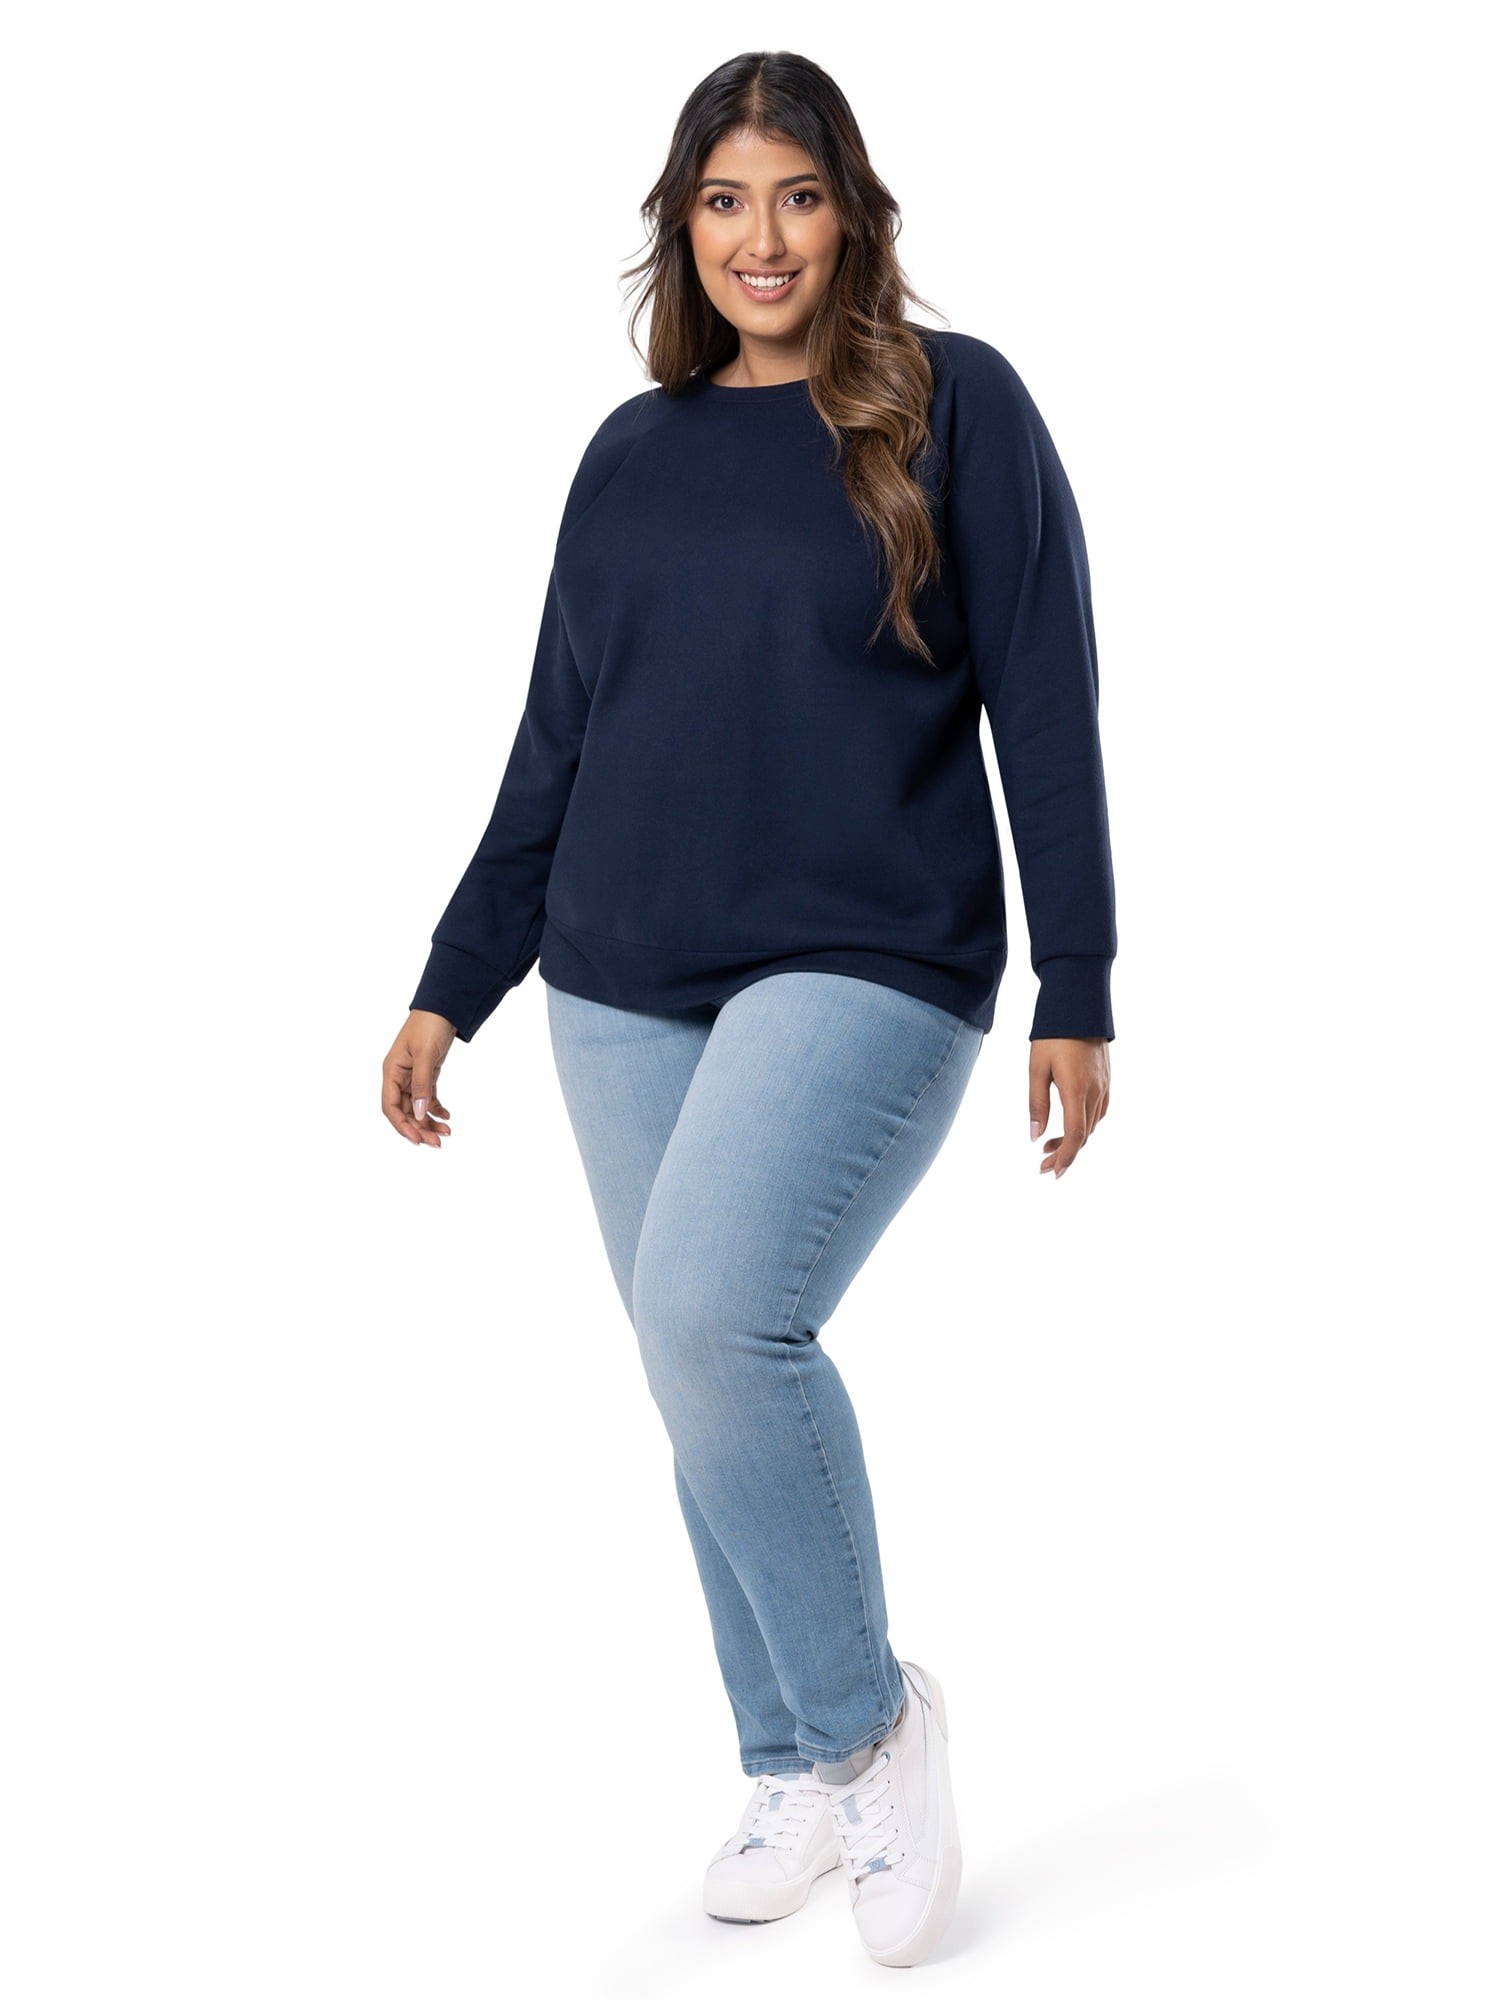 Terra & Sky Women's Plus Size Quarter Zip Sweatshirt 